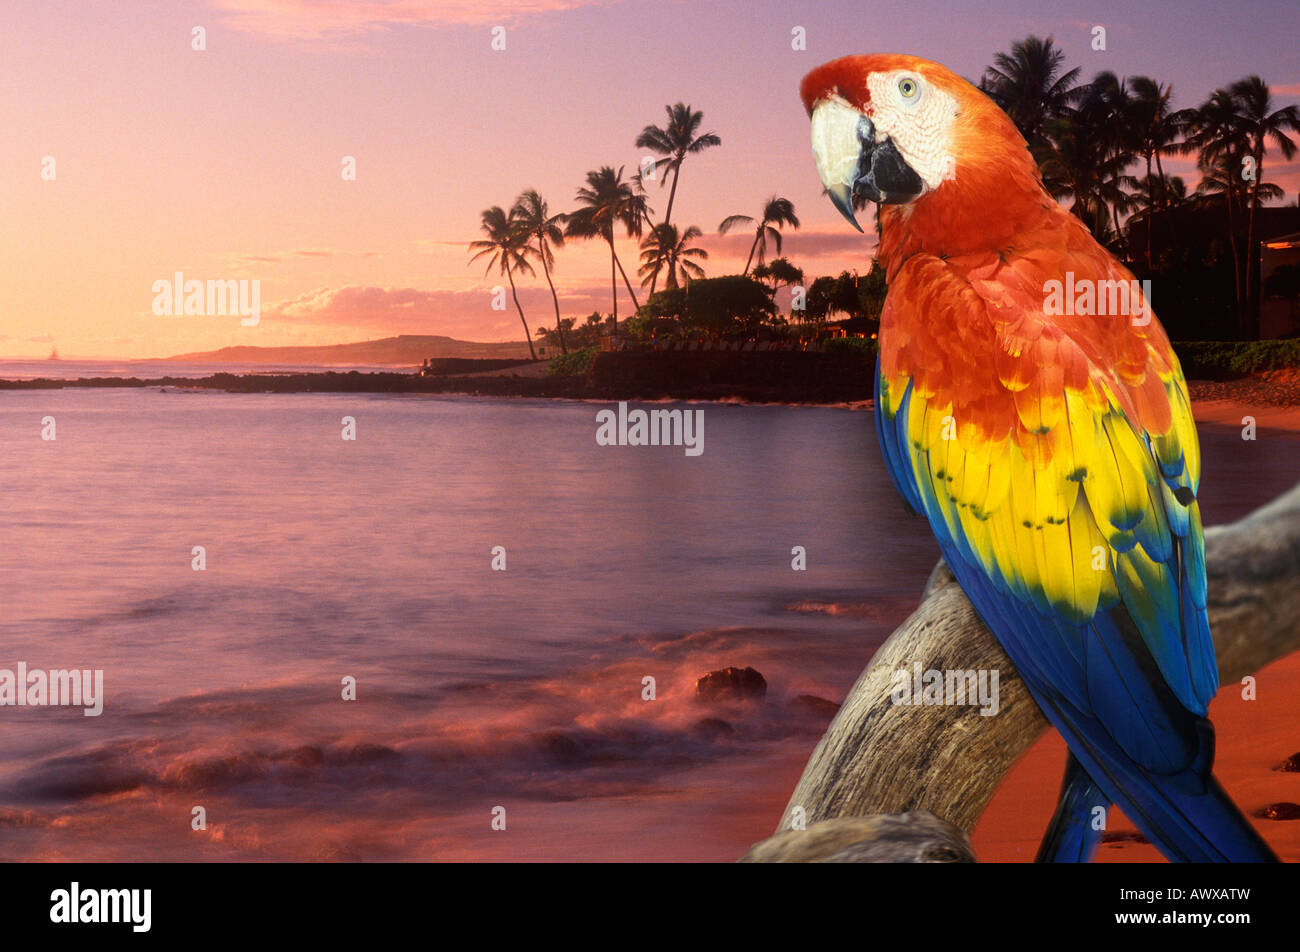 Imagen panorámica compuesta de un colorido loro en Hawai y la costa al atardecer Foto de stock